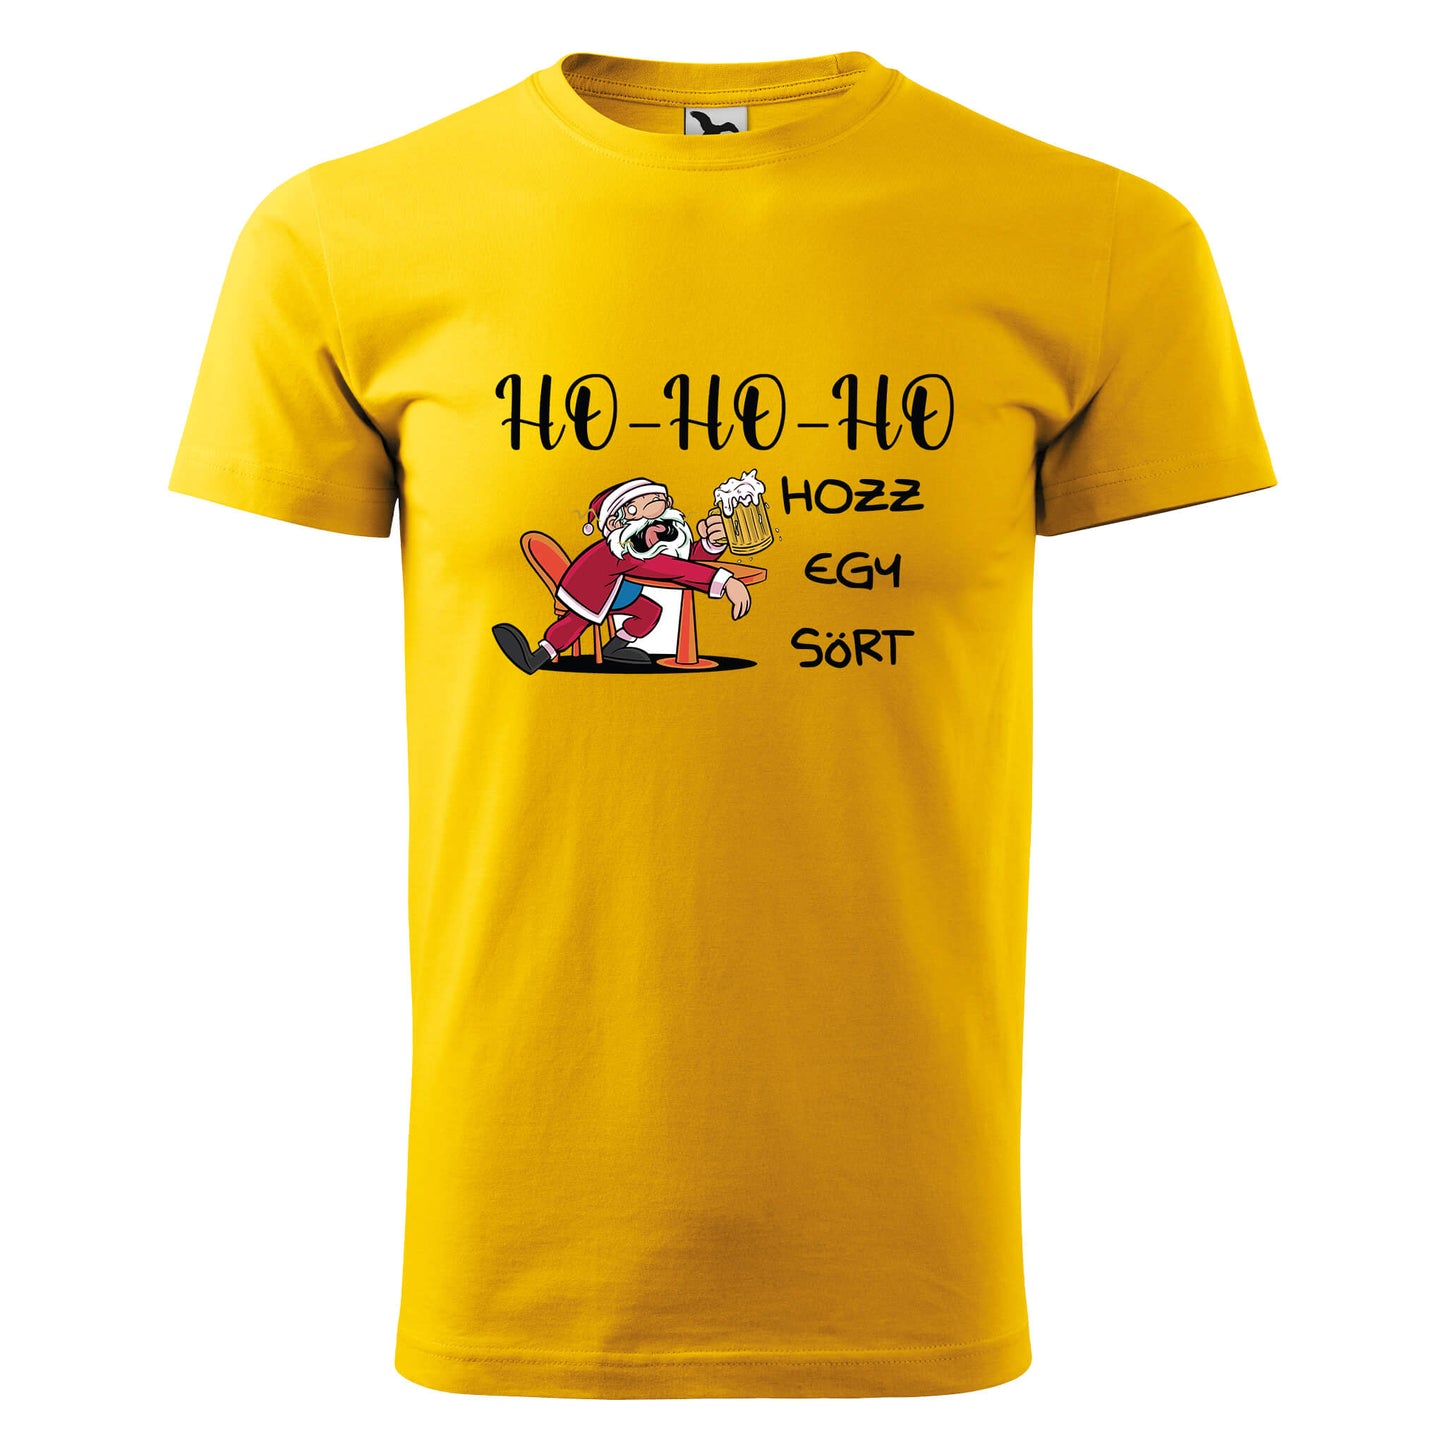 Ho-ho-ho hozz egy sort t-shirt - rvdesignprint